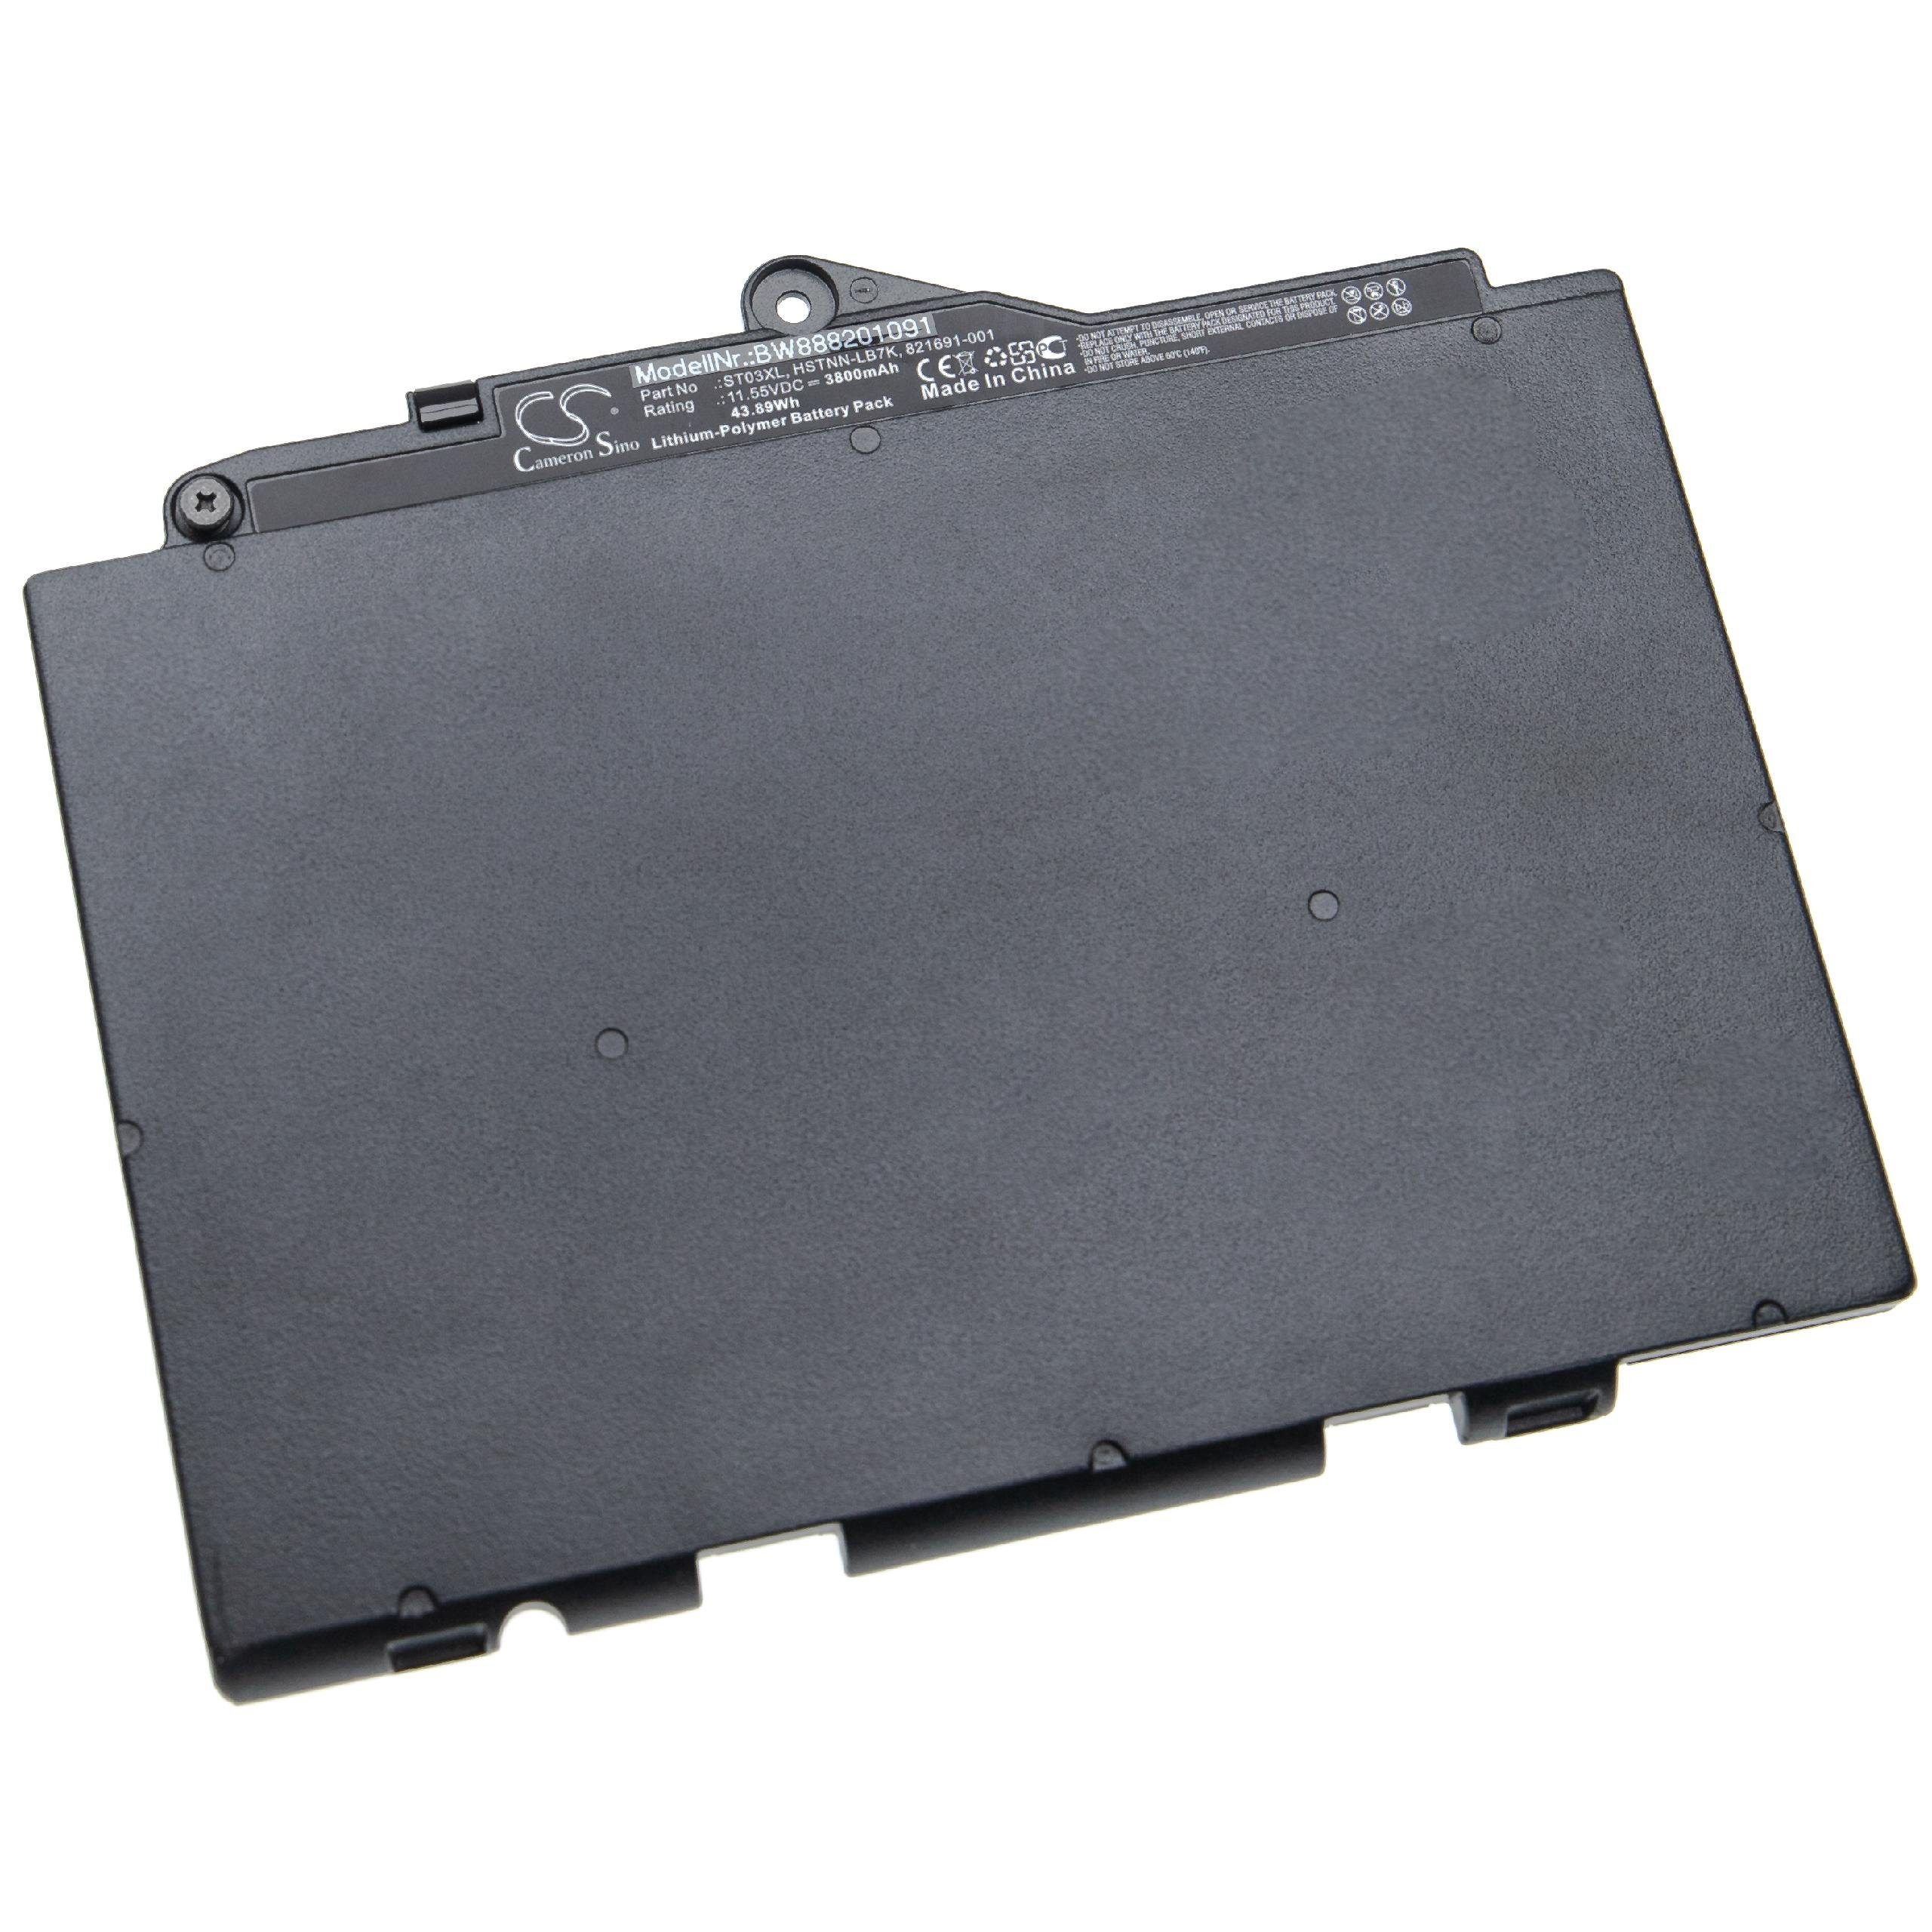 vhbw passend G4 828 für EliteBook 828 G4 Laptop-Akku HP 3800 G4 1LH23PC, 828 mAh 1LH27PC